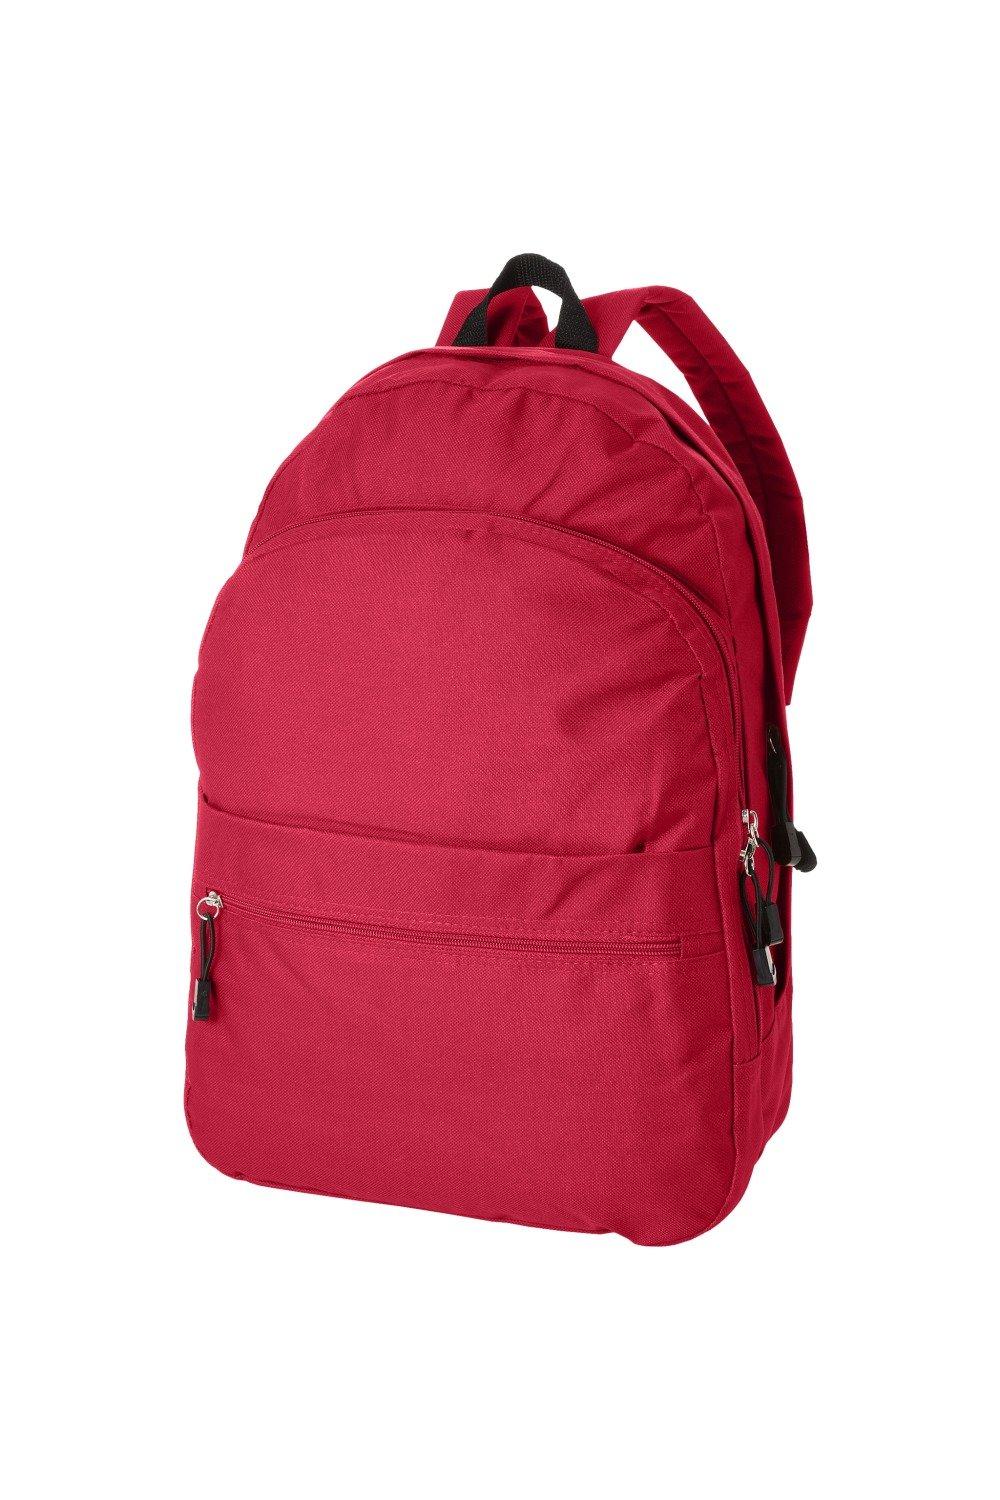 Трендовый рюкзак Bullet, красный универсальный сетчатый рюкзак унисекс с передним карманом оранжевый камуфляж